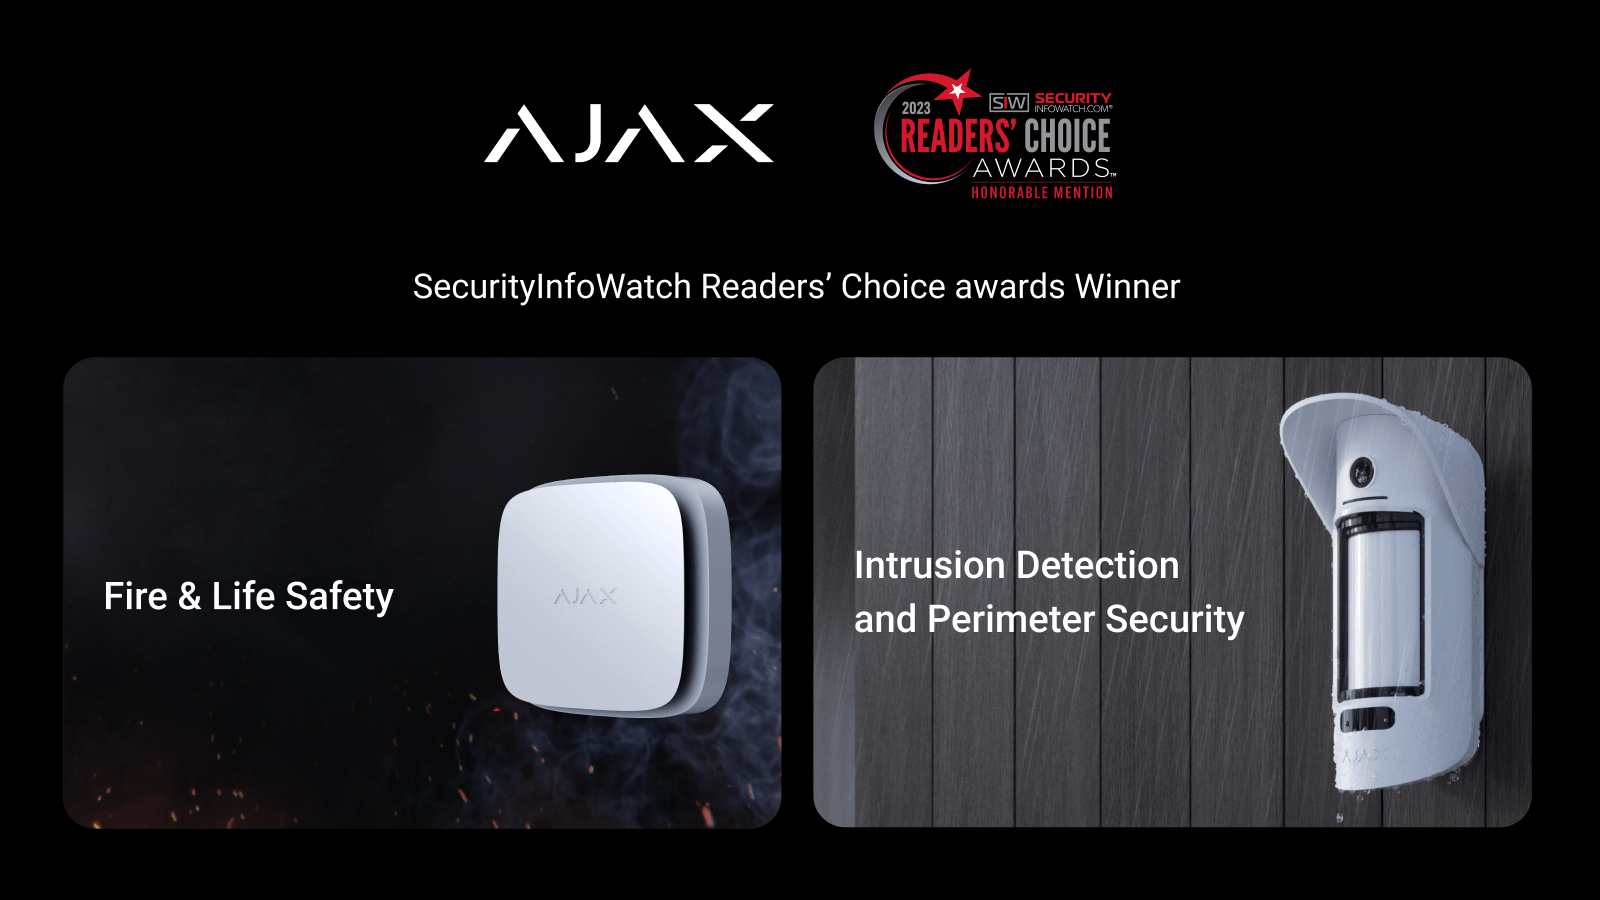 Ajax Systems отримала премію американського видання SecurityInfoWatch.com у 2 категоріях